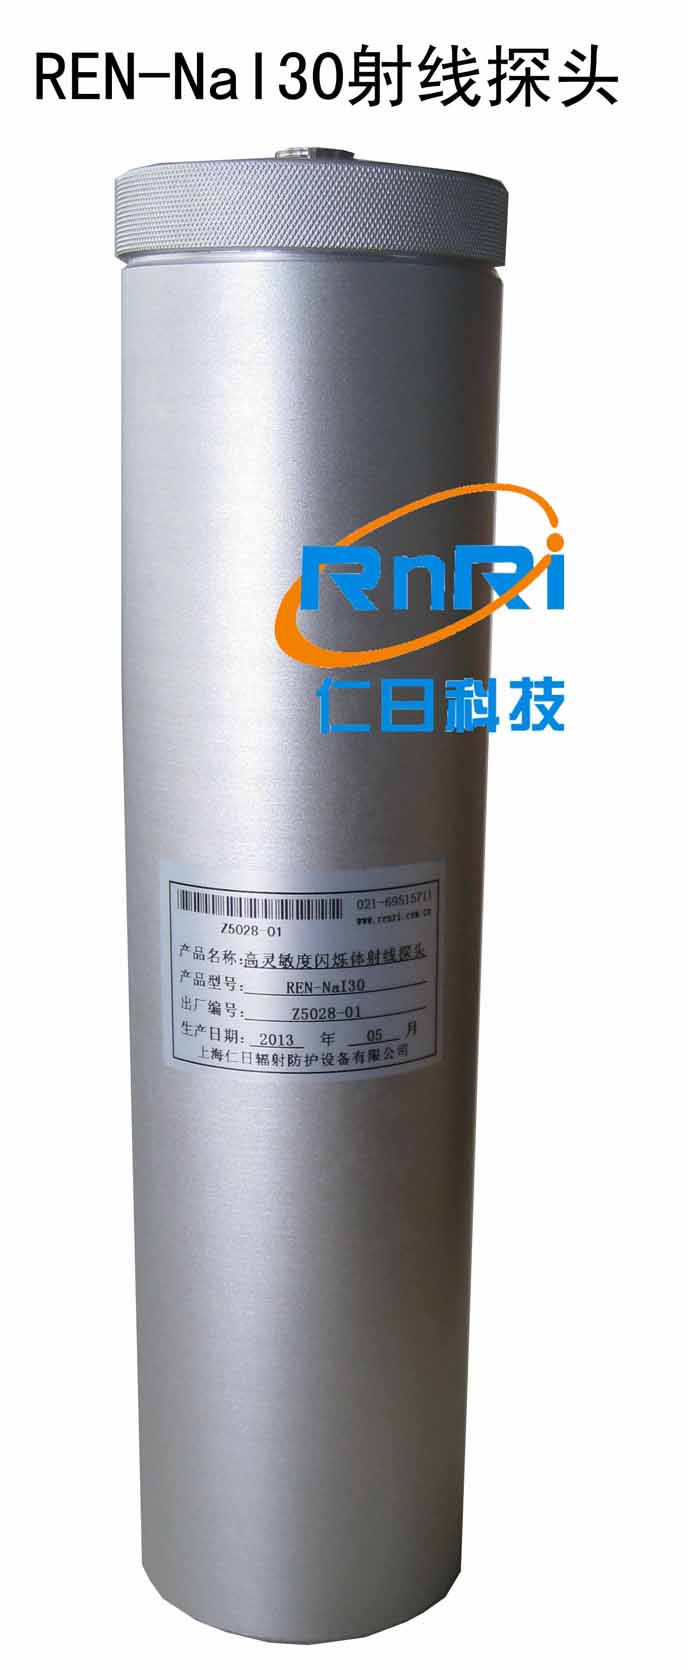 REN-NaI30 高灵敏度闪烁体低量程射线探头